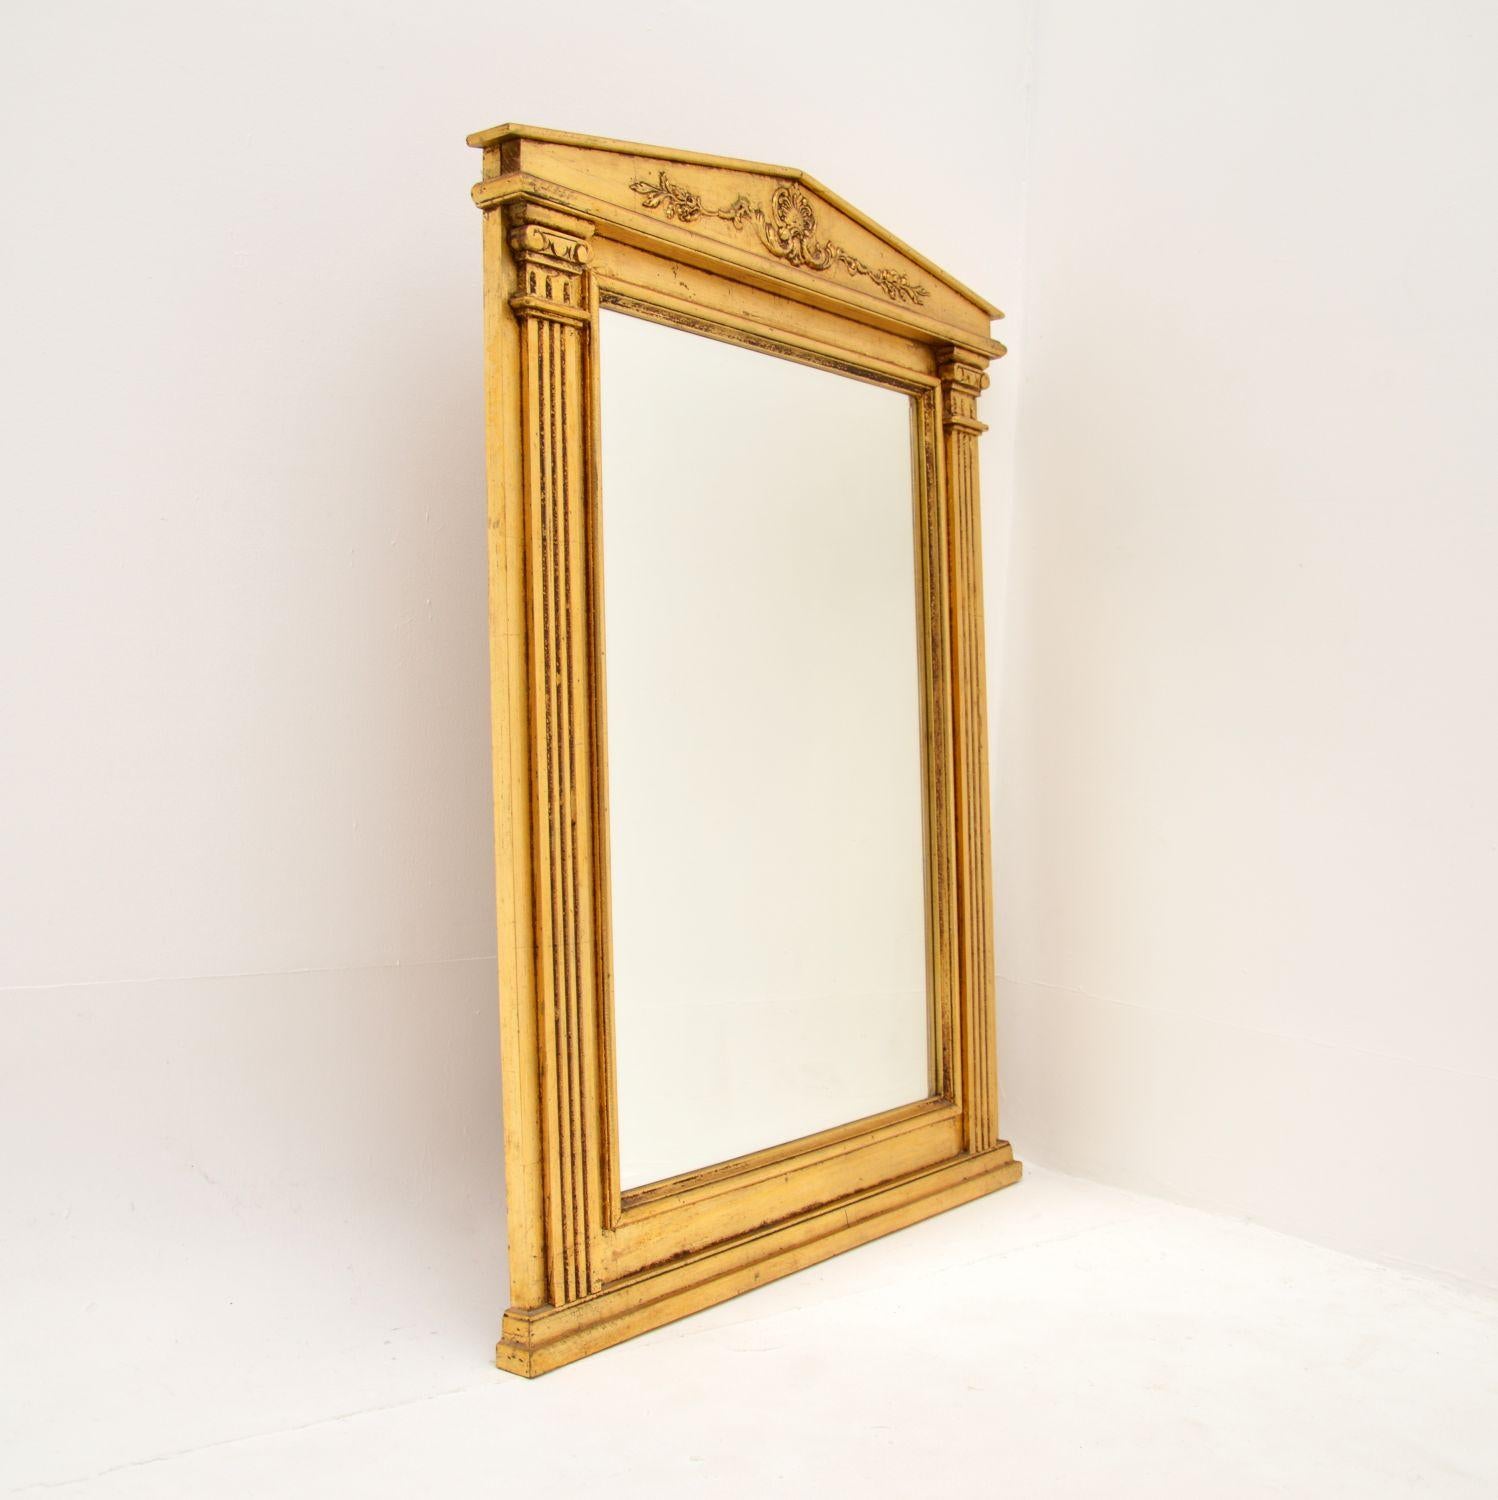 Magnifique miroir italien néoclassique en bois doré. Fabriqué en Italie, il date des années 1930-50.

Il est d'une superbe qualité et d'une grande taille, assez large et impressionnant avec son verre biseauté. Les côtés sont ornés de colonnes